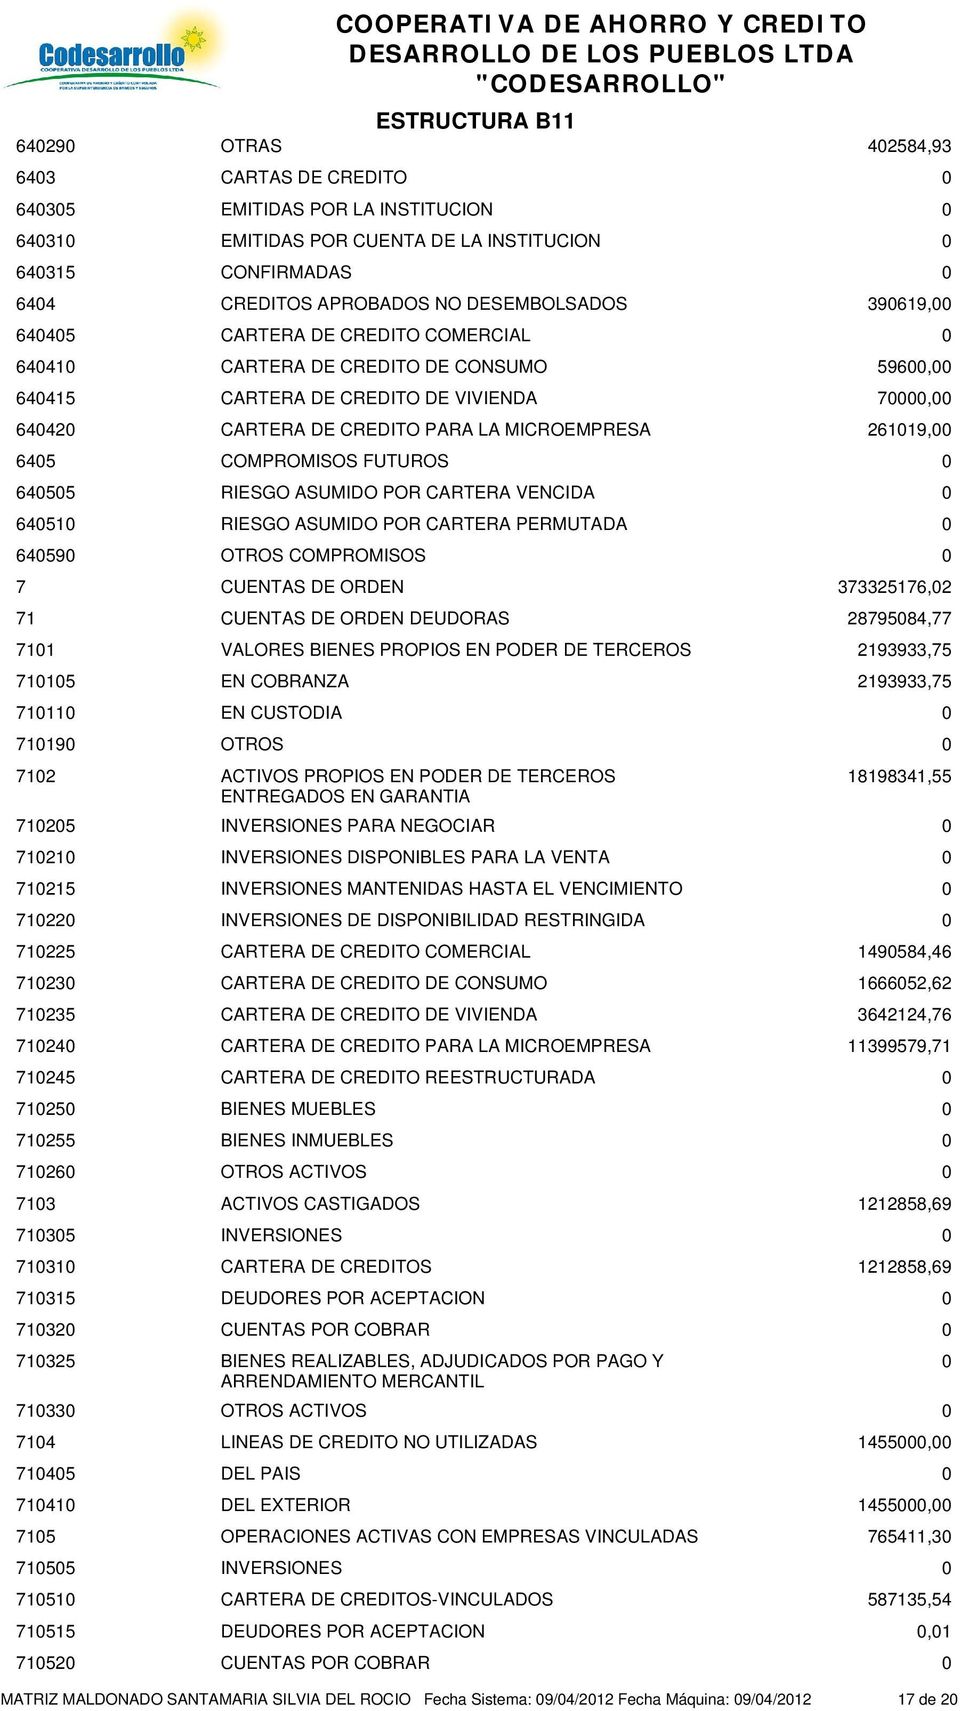 CARTERA VENCIDA 6451 RIESGO ASUMIDO POR CARTERA PERMUTADA 6459 OTROS COMPROMISOS 7 CUENTAS DE ORDEN 373325176,2 71 CUENTAS DE ORDEN DEUDORAS 2879584,77 711 VALORES BIENES PROPIOS EN PODER DE TERCEROS